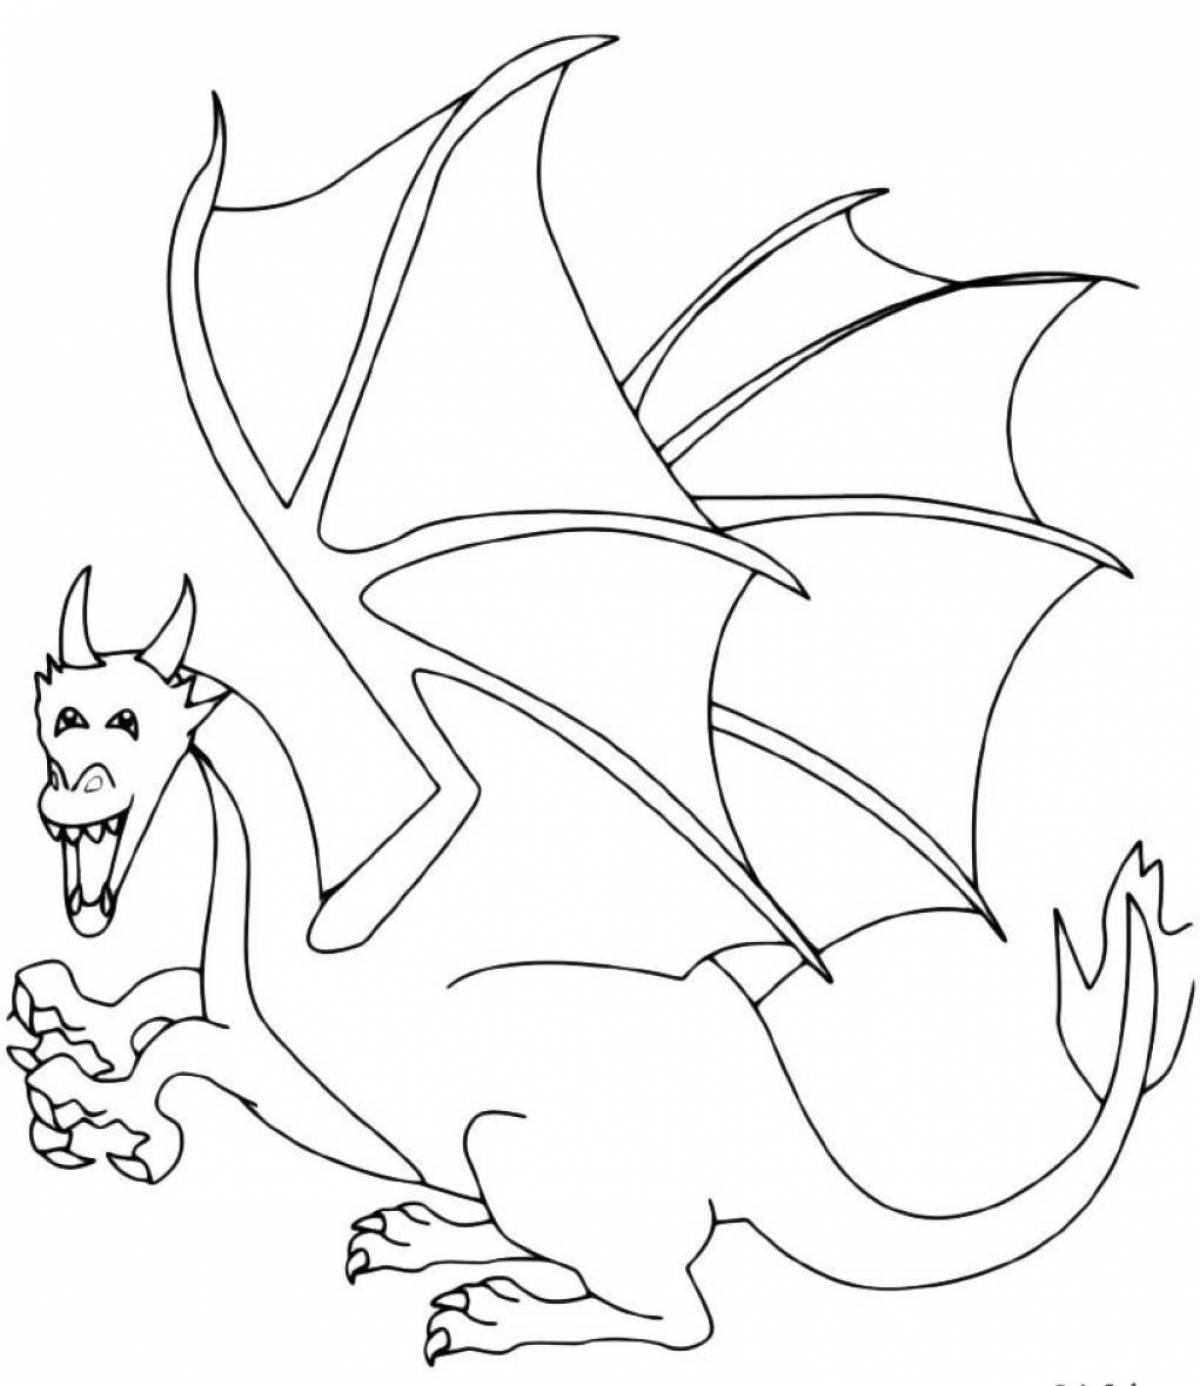 Увлекательная раскраска дракон для детей